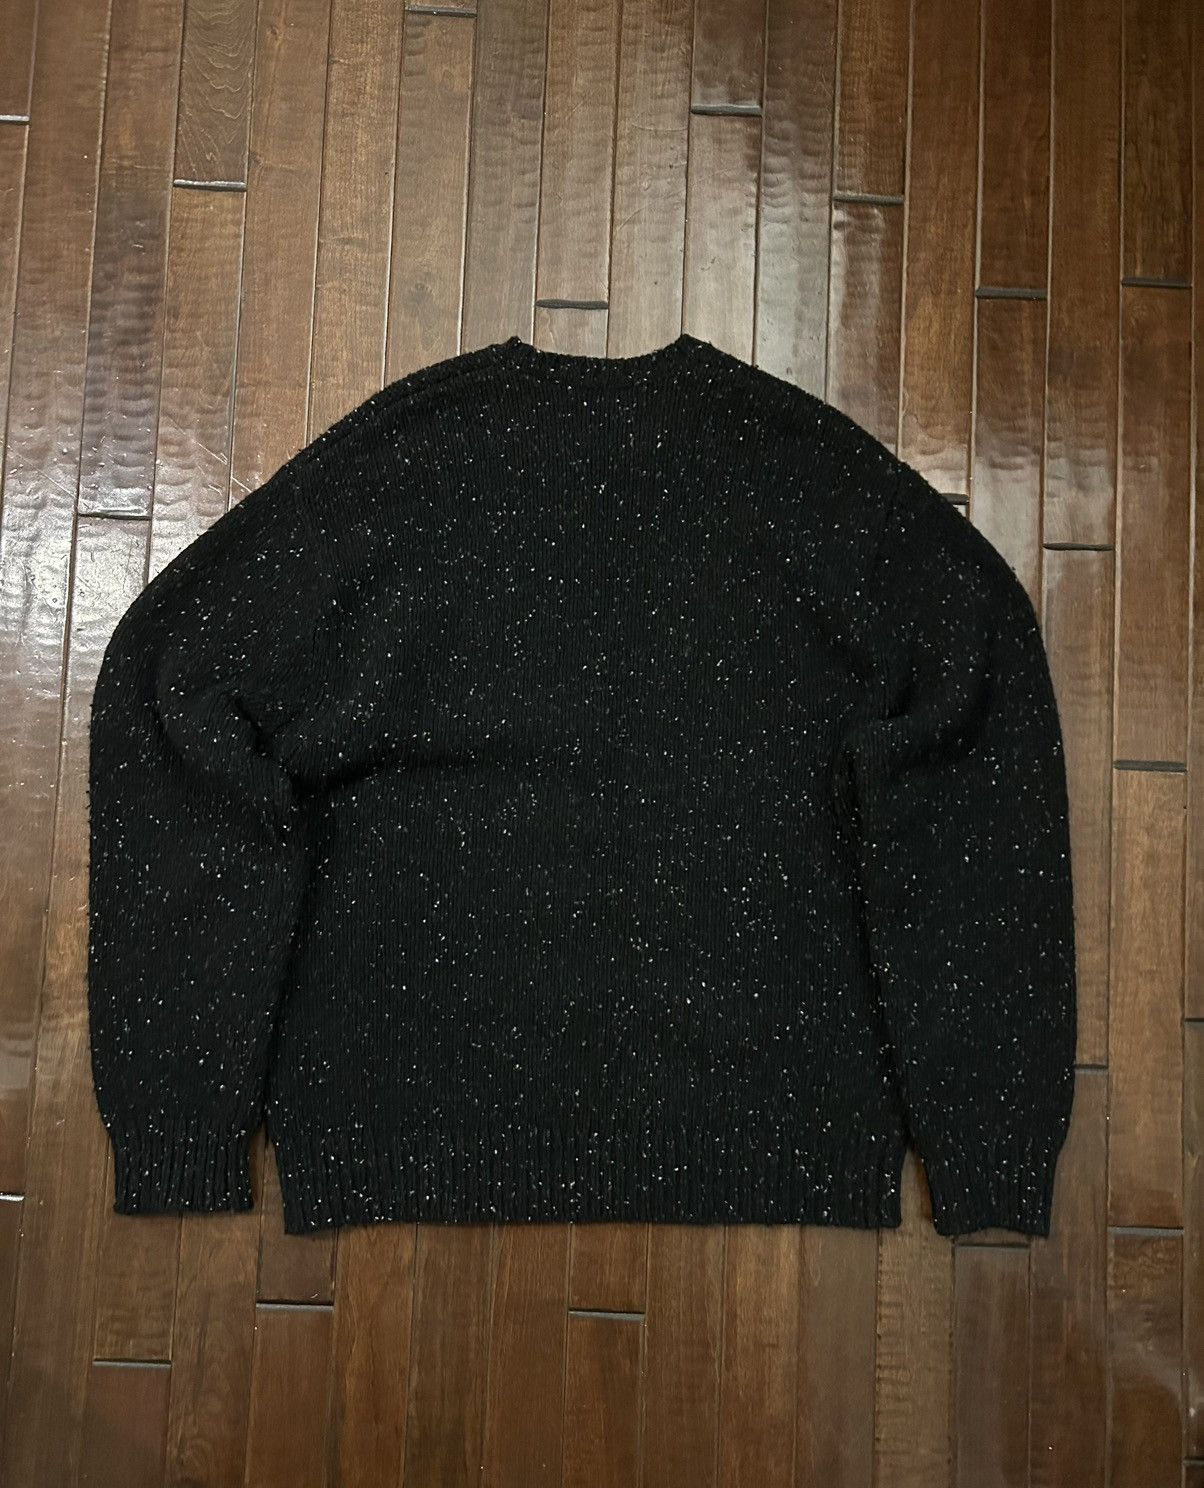 Supreme Supreme Small Box Speckle Sweater | Grailed